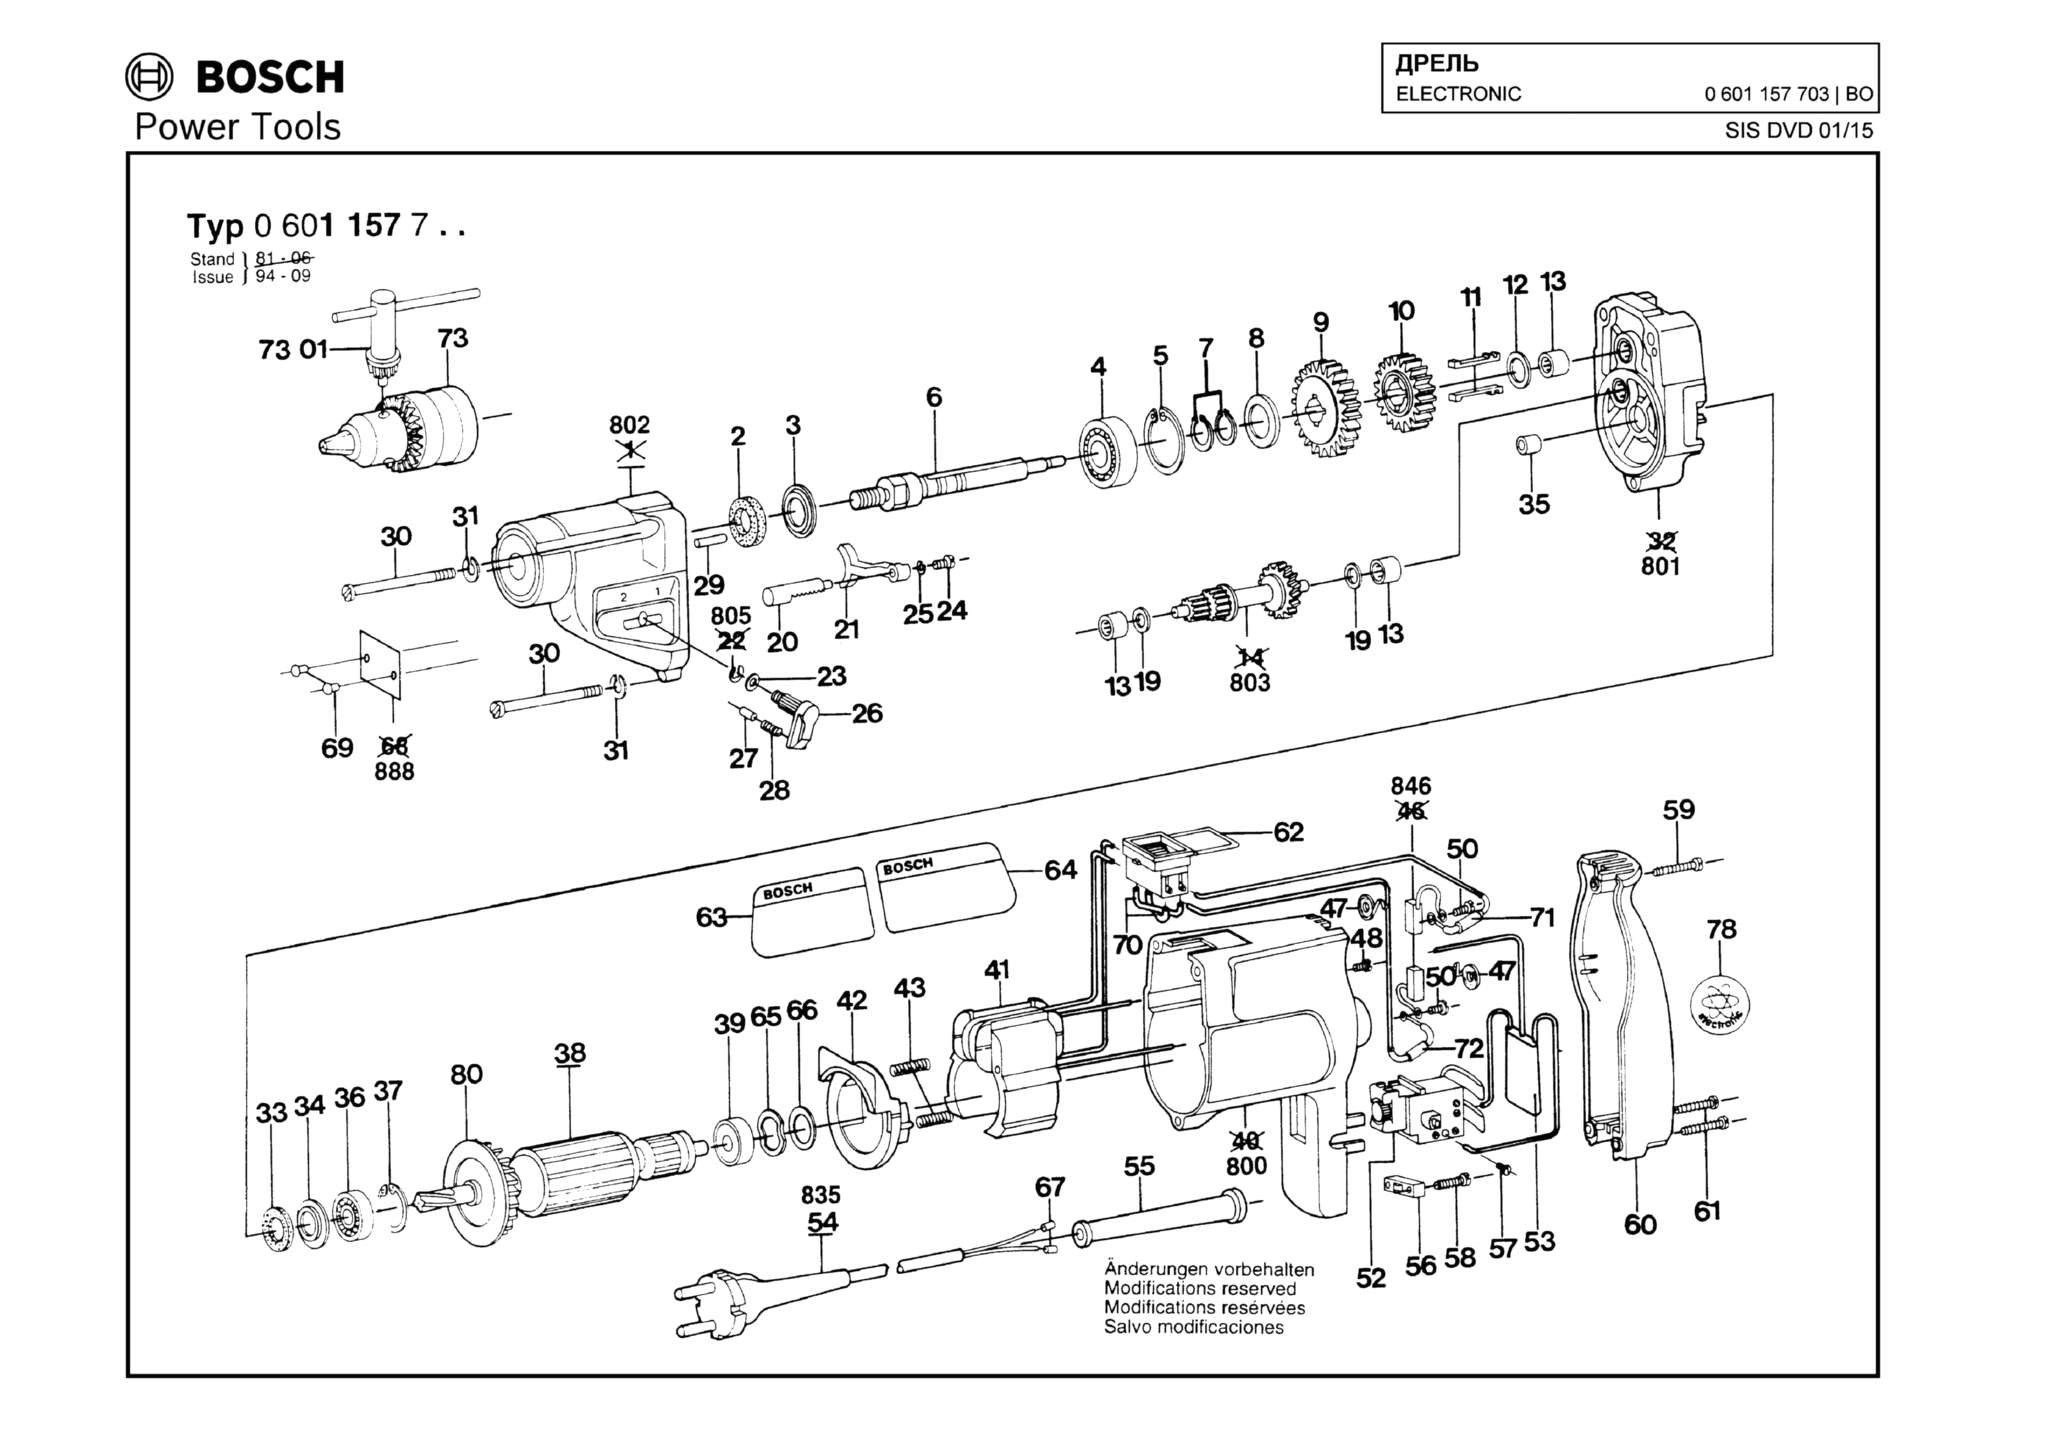 Запчасти, схема и деталировка Bosch ELECTRONIC (ТИП 0601157703)